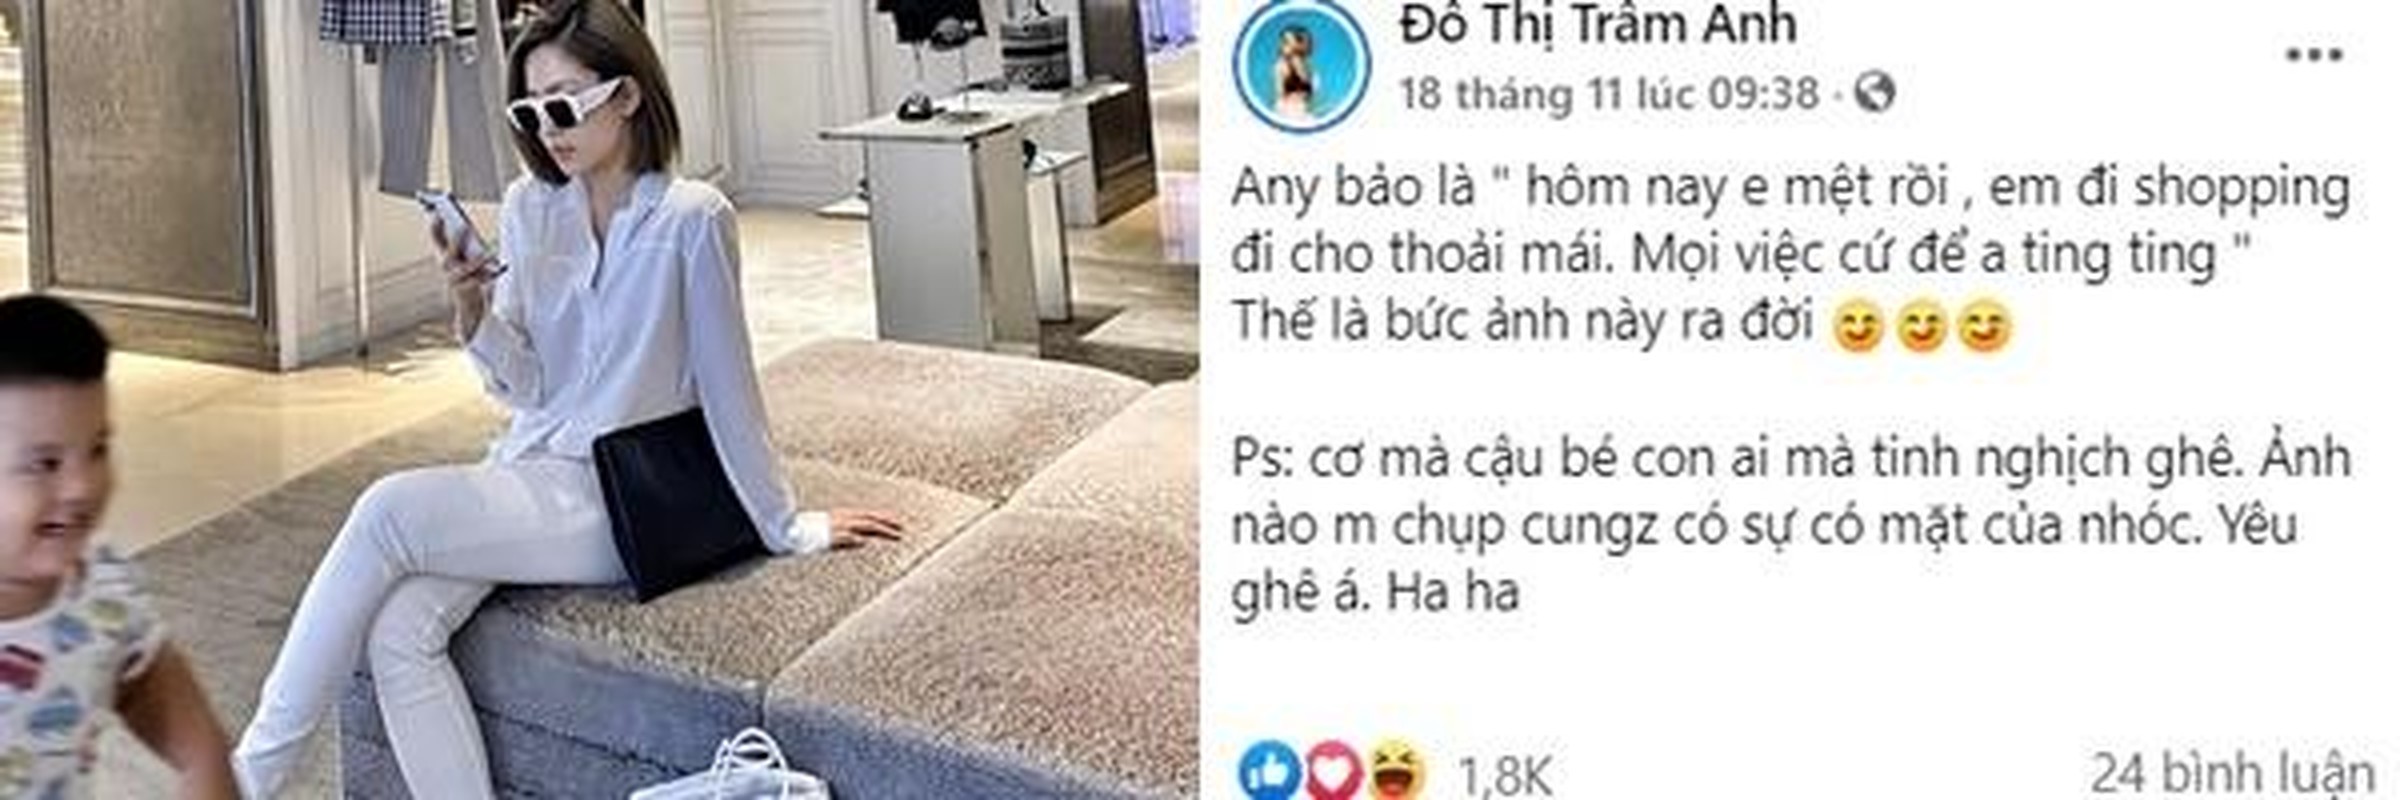 De lo canh tay la, hot girl Tram Anh khien netizen don doan xon xao-Hinh-9